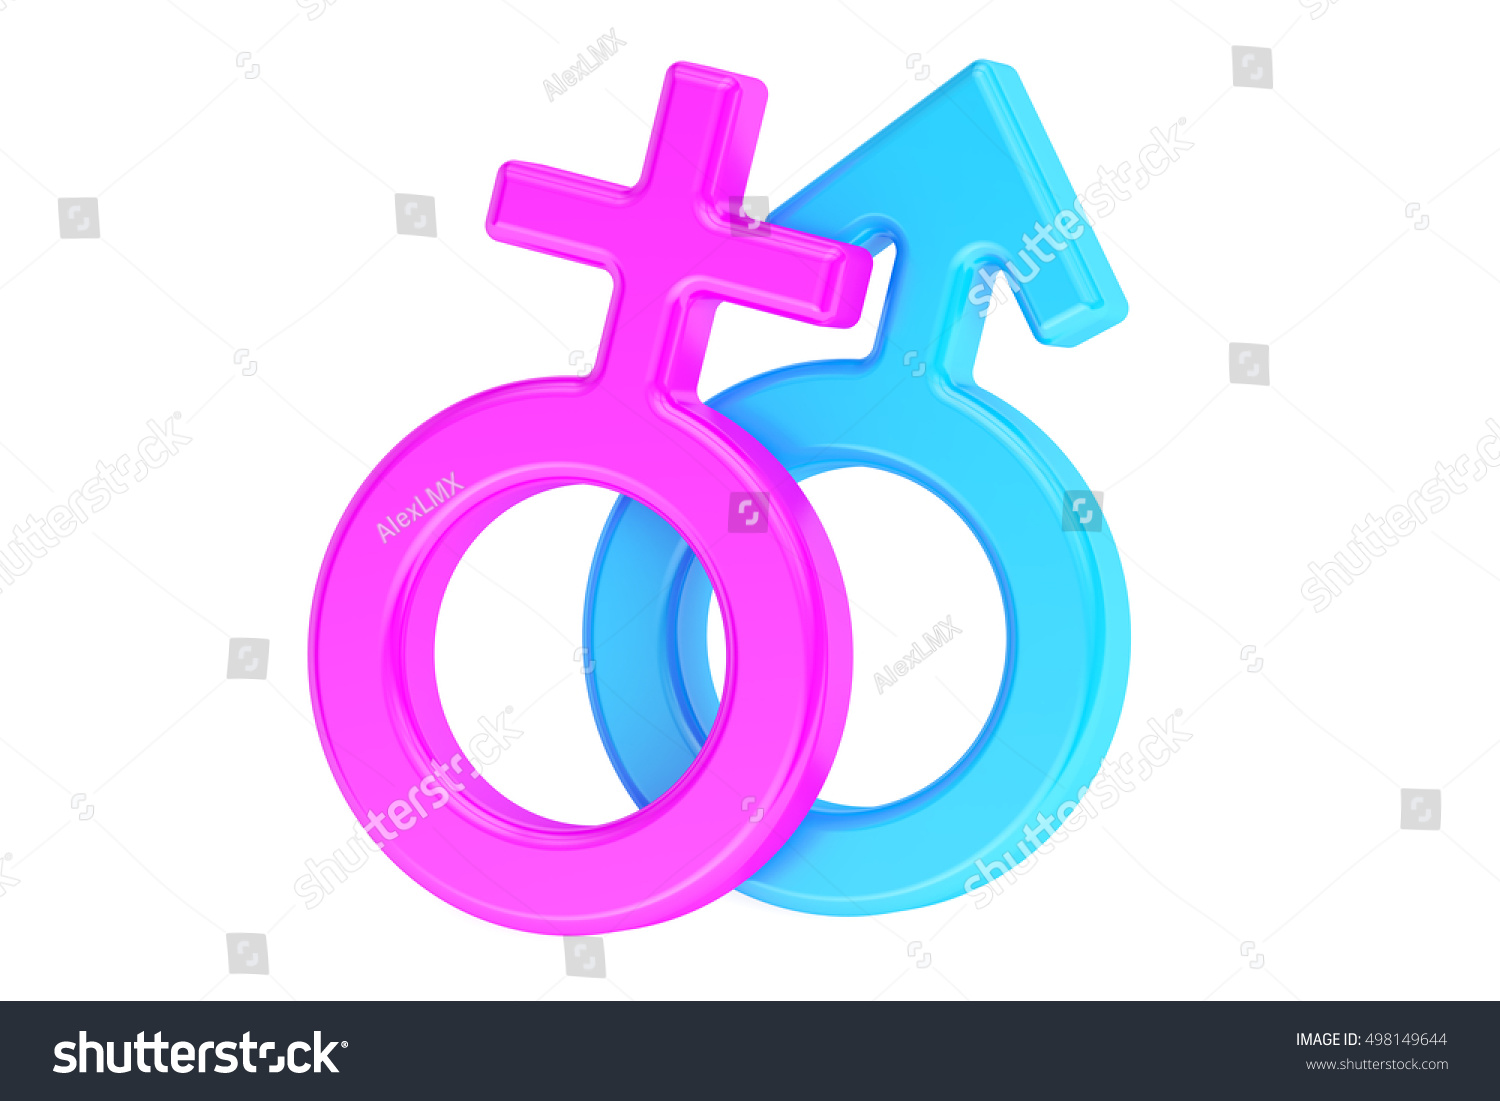 Female Male Gender Symbols 3d Rendering Stock Illustration 498149644 Shutterstock 6296